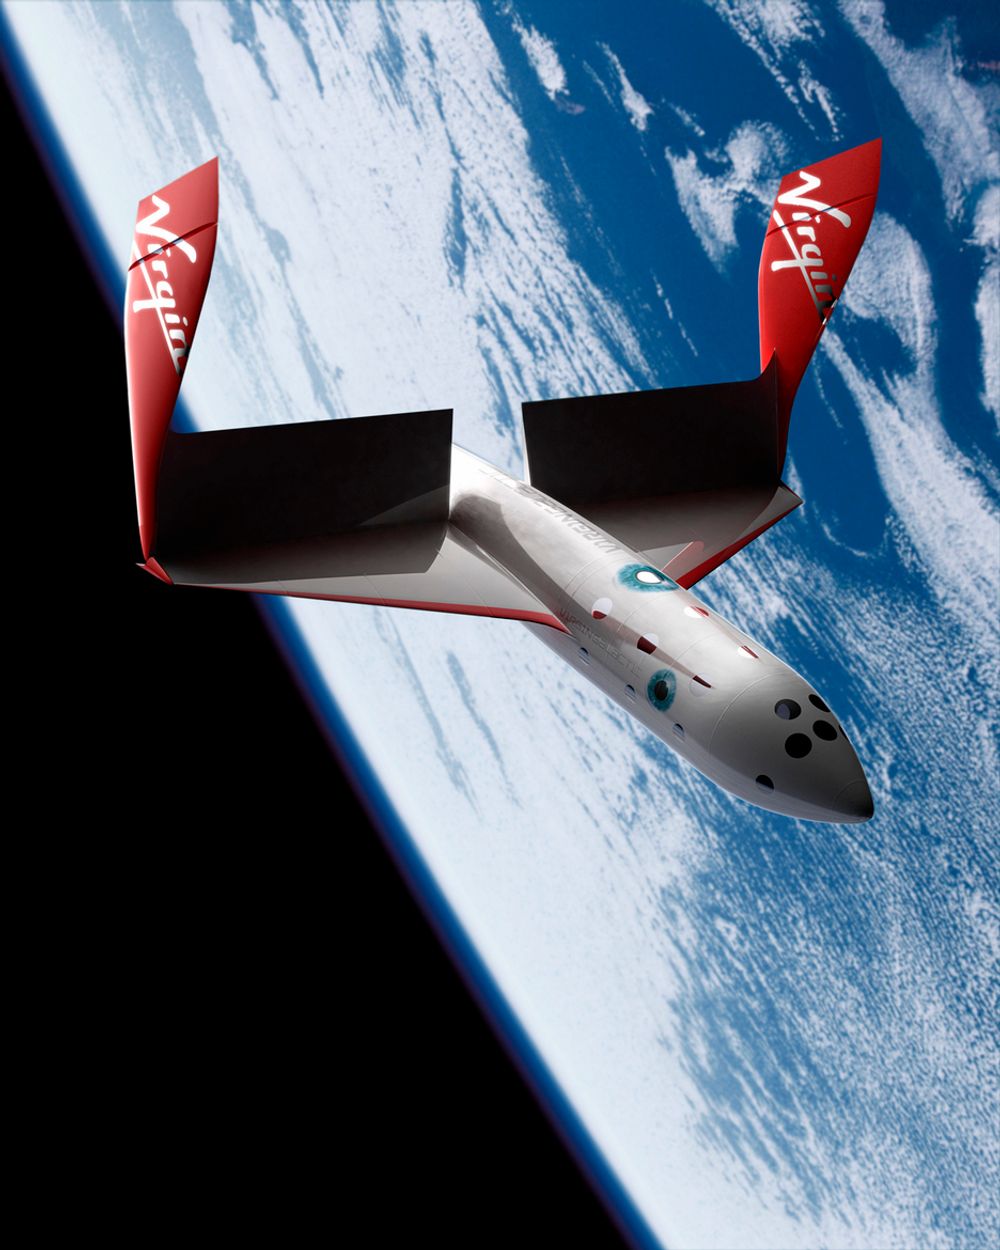 STORT: SpaceShip Two skal vise turistene Jorden utenfra. Noe mange drømmer om, men de færreste har mulighet - eller råd til - å oppleve.